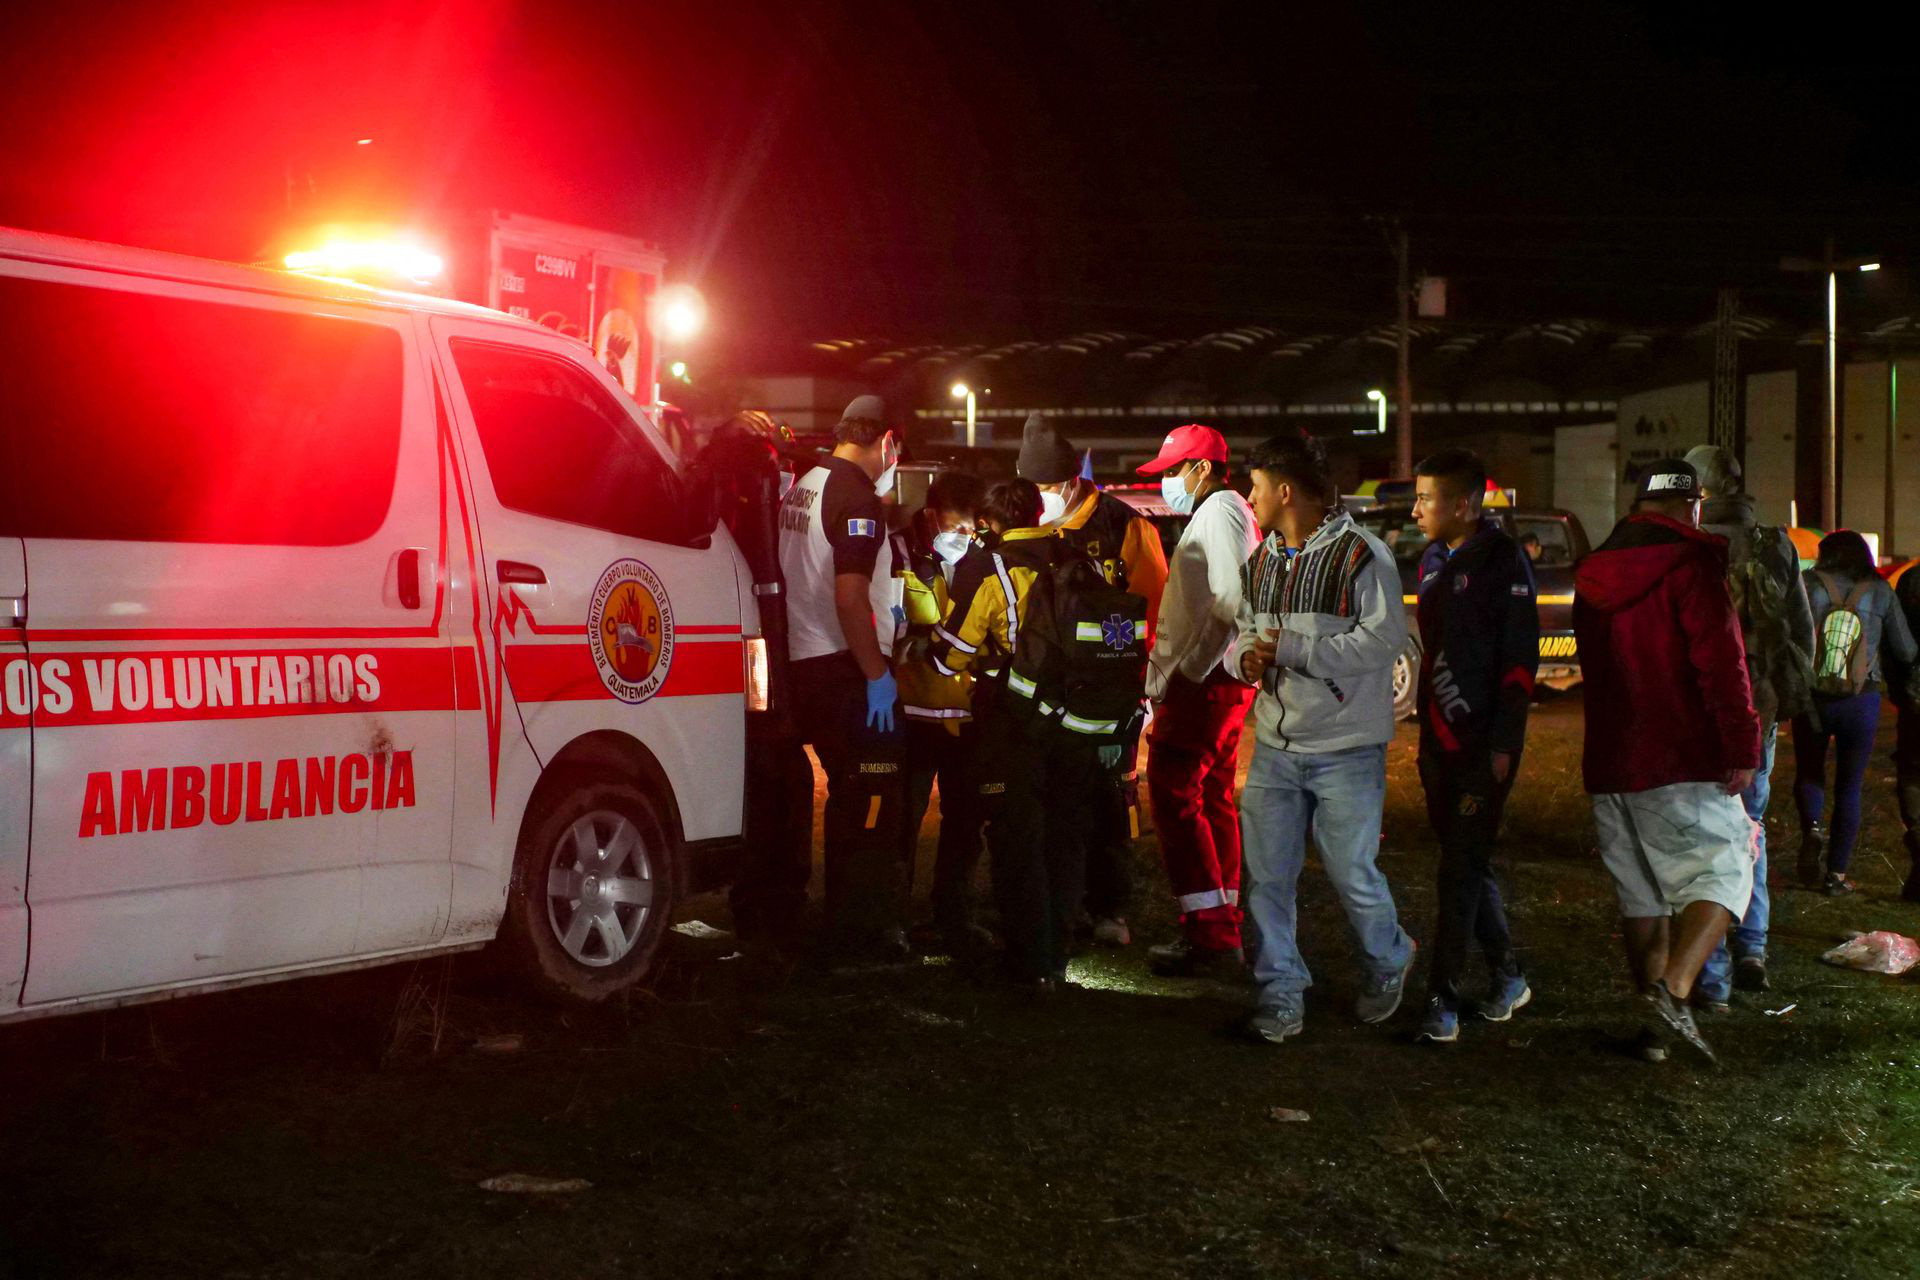 Giẫm đạp tại lễ hội âm nhạc ở Guatemala khiến ít nhất 9 người tử vong, trong đó có 2 trẻ em - Ảnh 2.